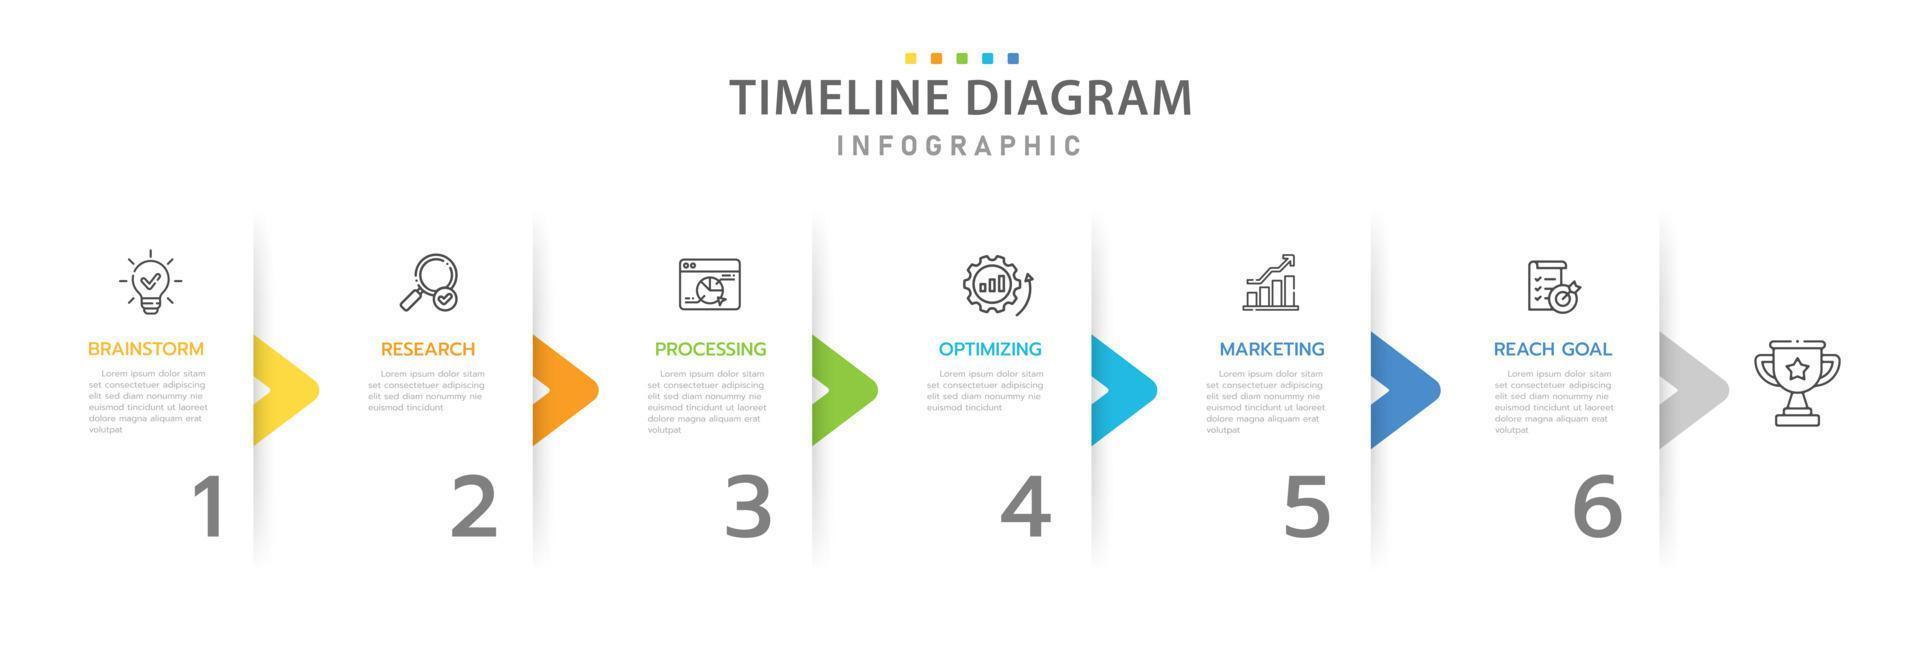 modelo de infográfico para negócios. Diagrama de linha do tempo moderno de 6 etapas com seta e tópico, cronograma de infográfico de vetor de apresentação.